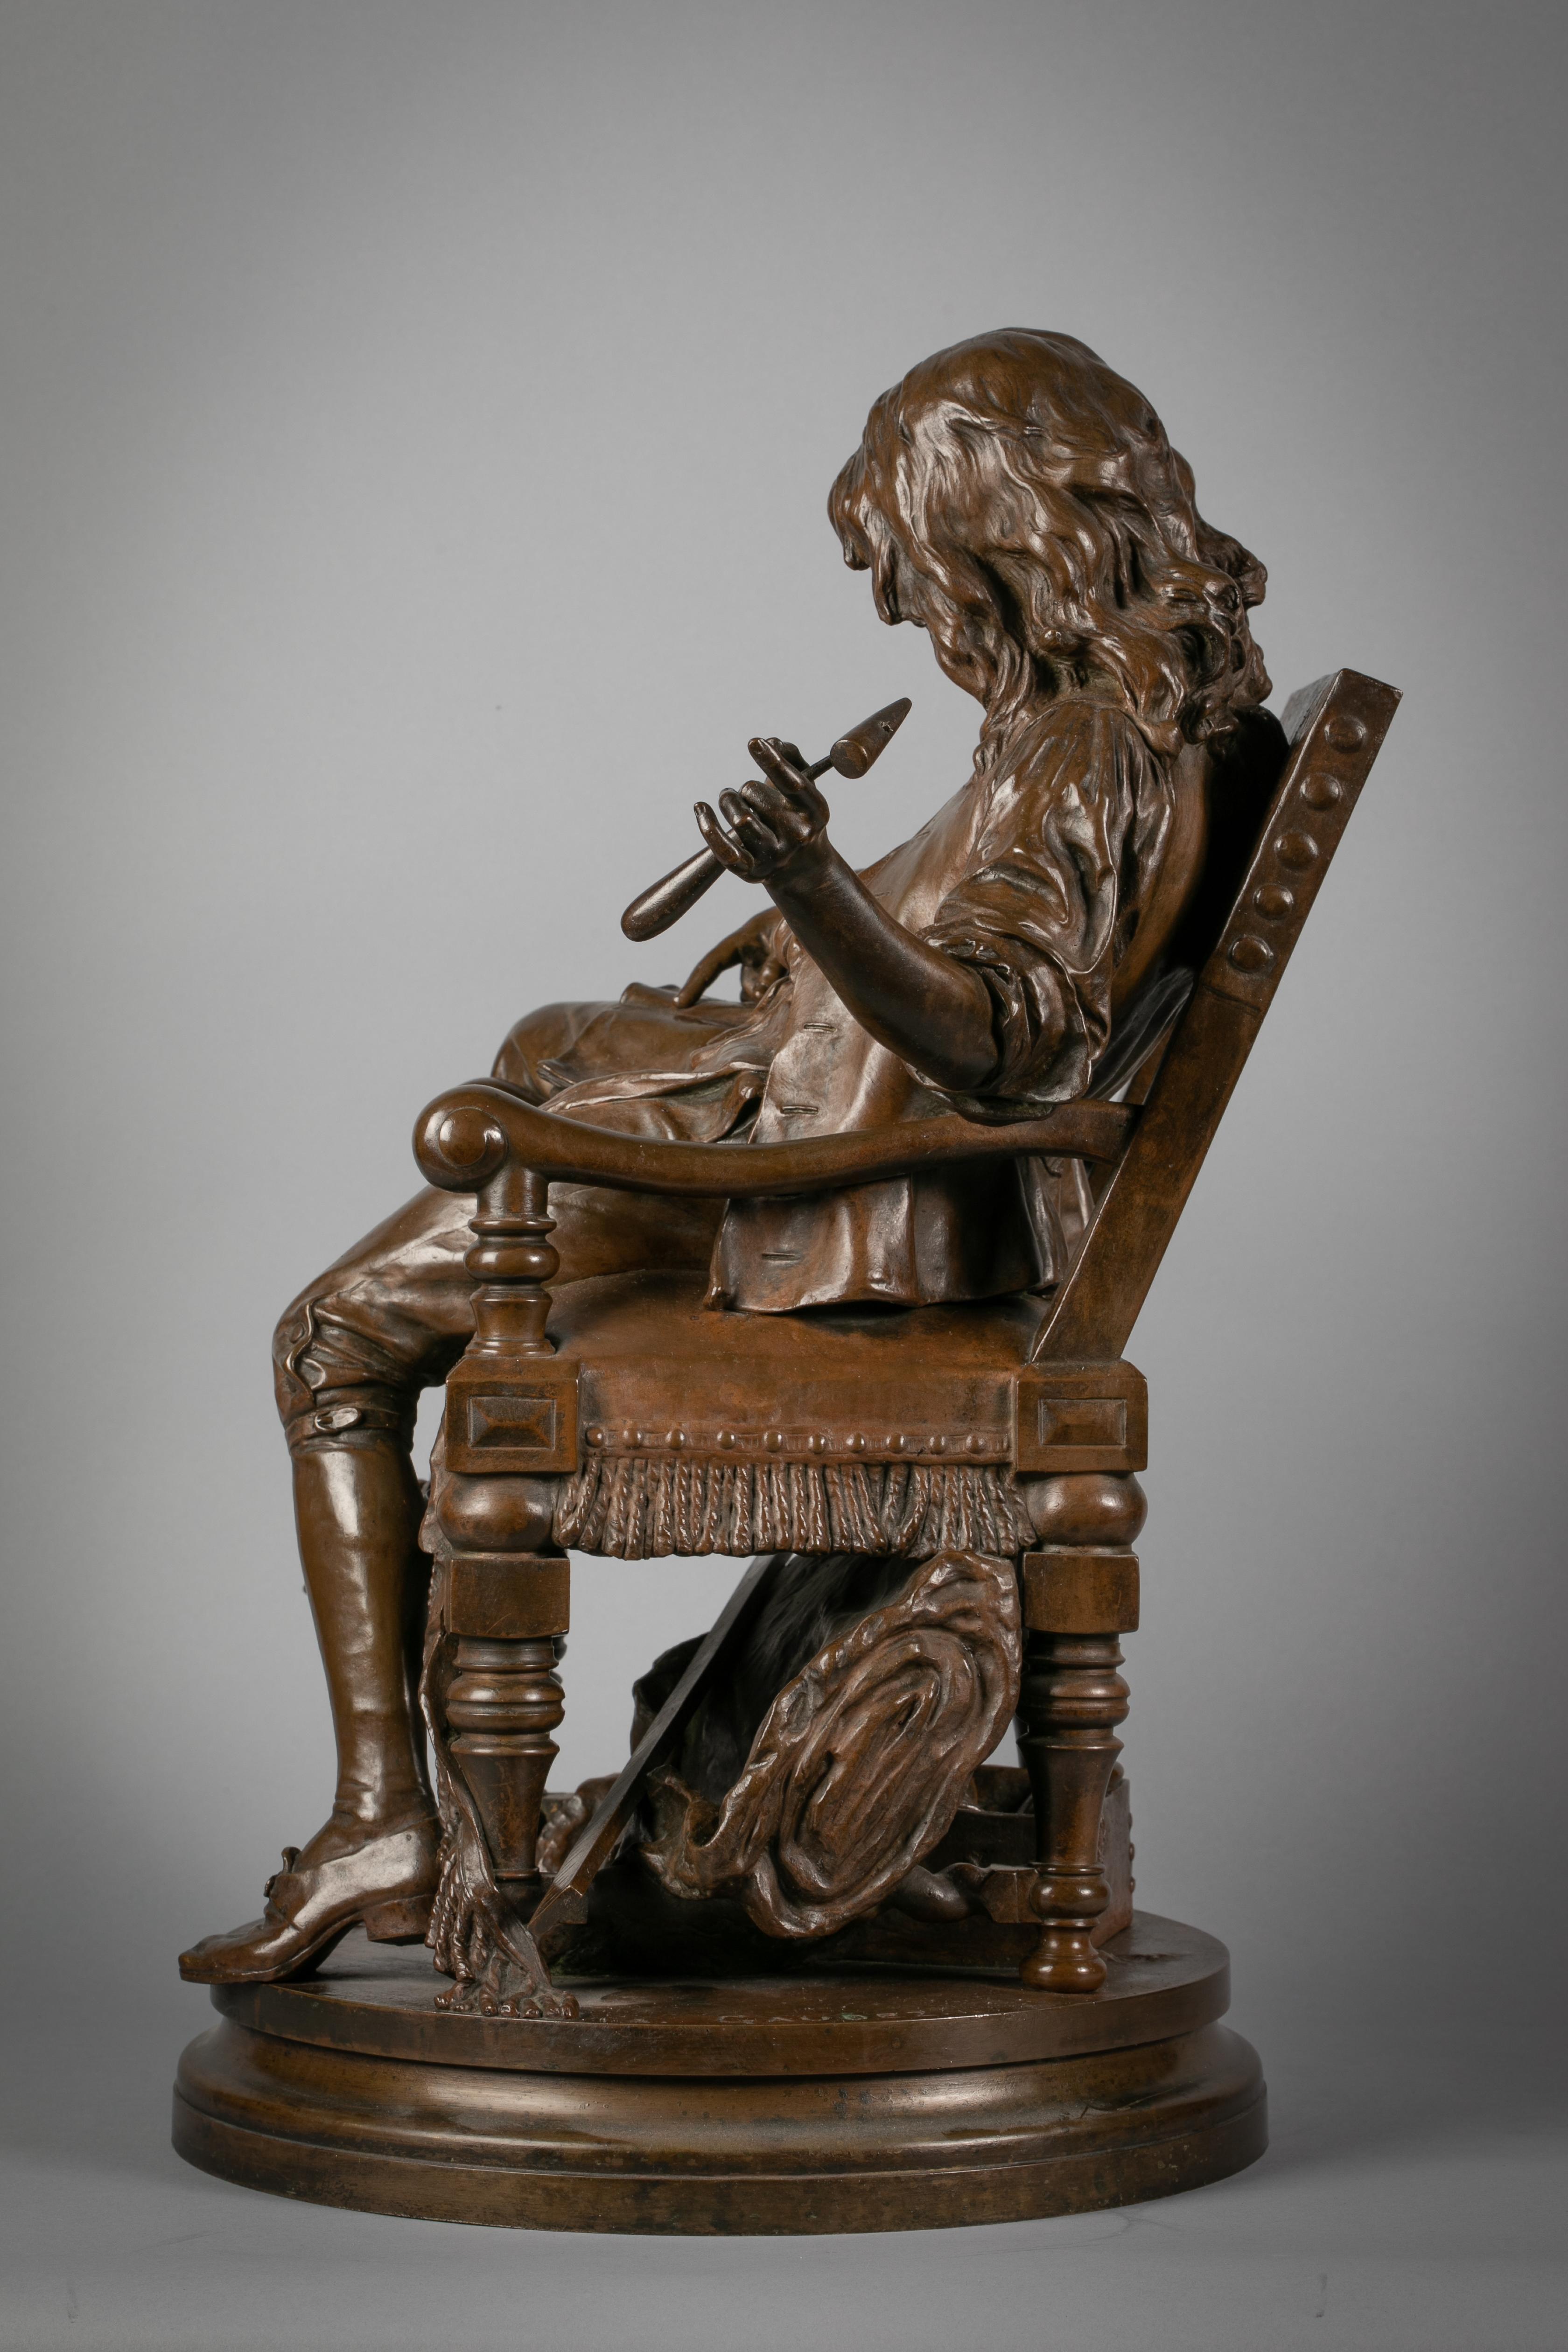 Junge in sitzender Pose mit einem aufgeschlagenen Buch auf dem Schoß. Auf einem drehbaren runden Sockel. Mit diesem Modell stellt Gaudez (gest. 1902) eine bekannte Begebenheit aus dem Leben eines Tapeziererlehrlings nach, der zum berühmten